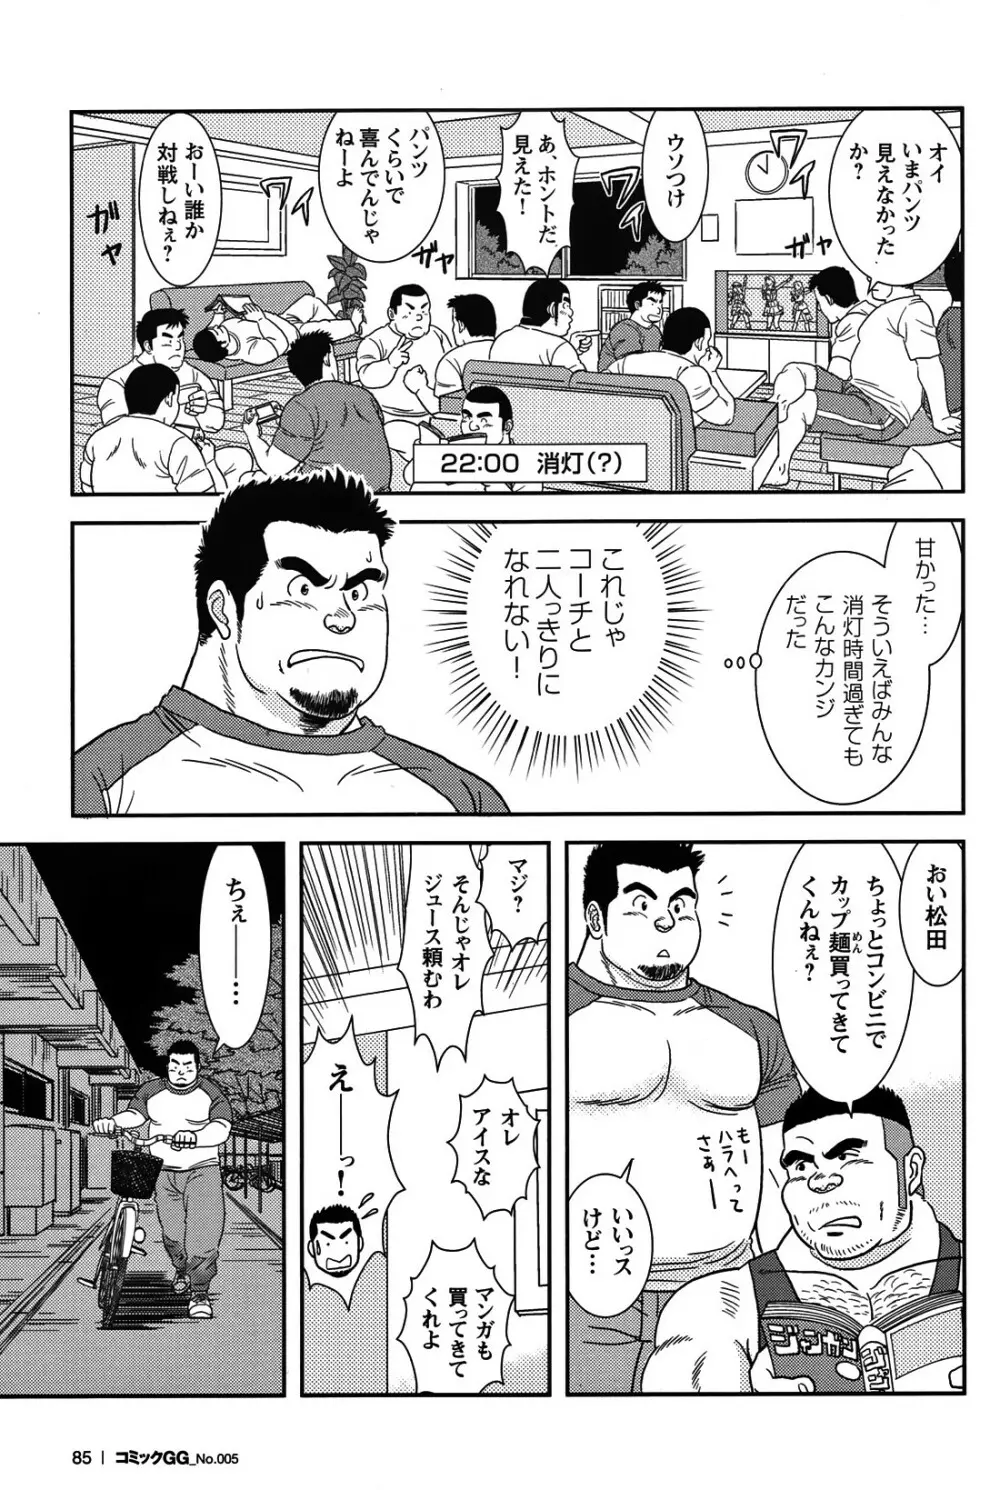 Comic G-men Gaho No.05 78ページ